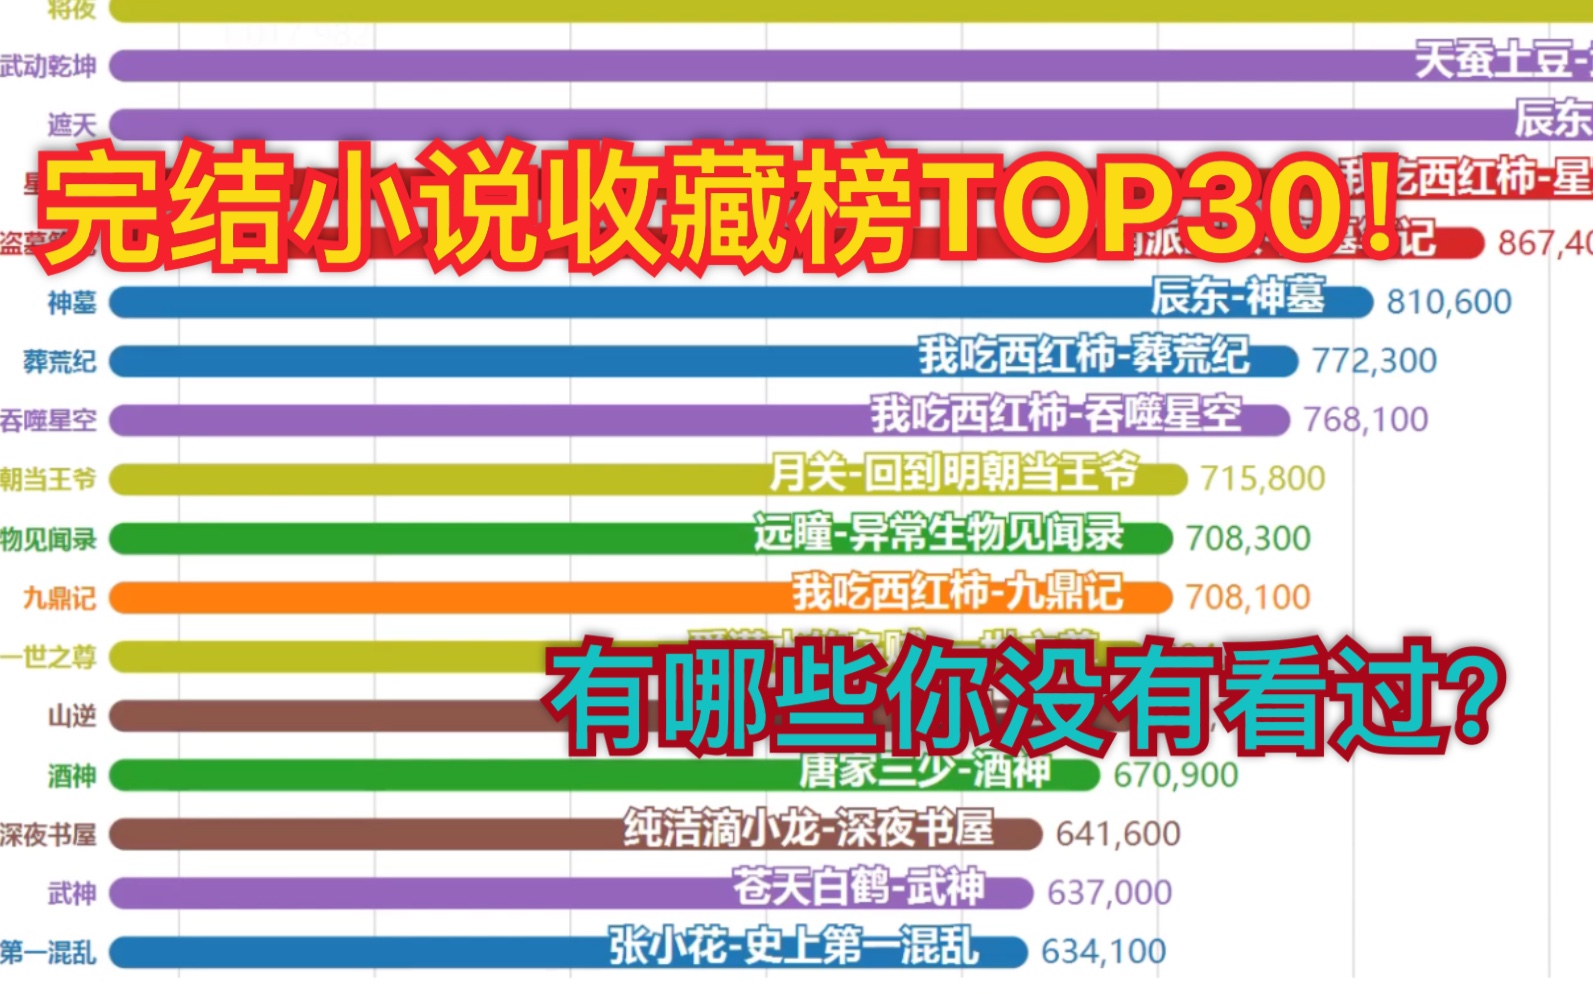 完结小说排行榜！TOP30!【数据可视化】